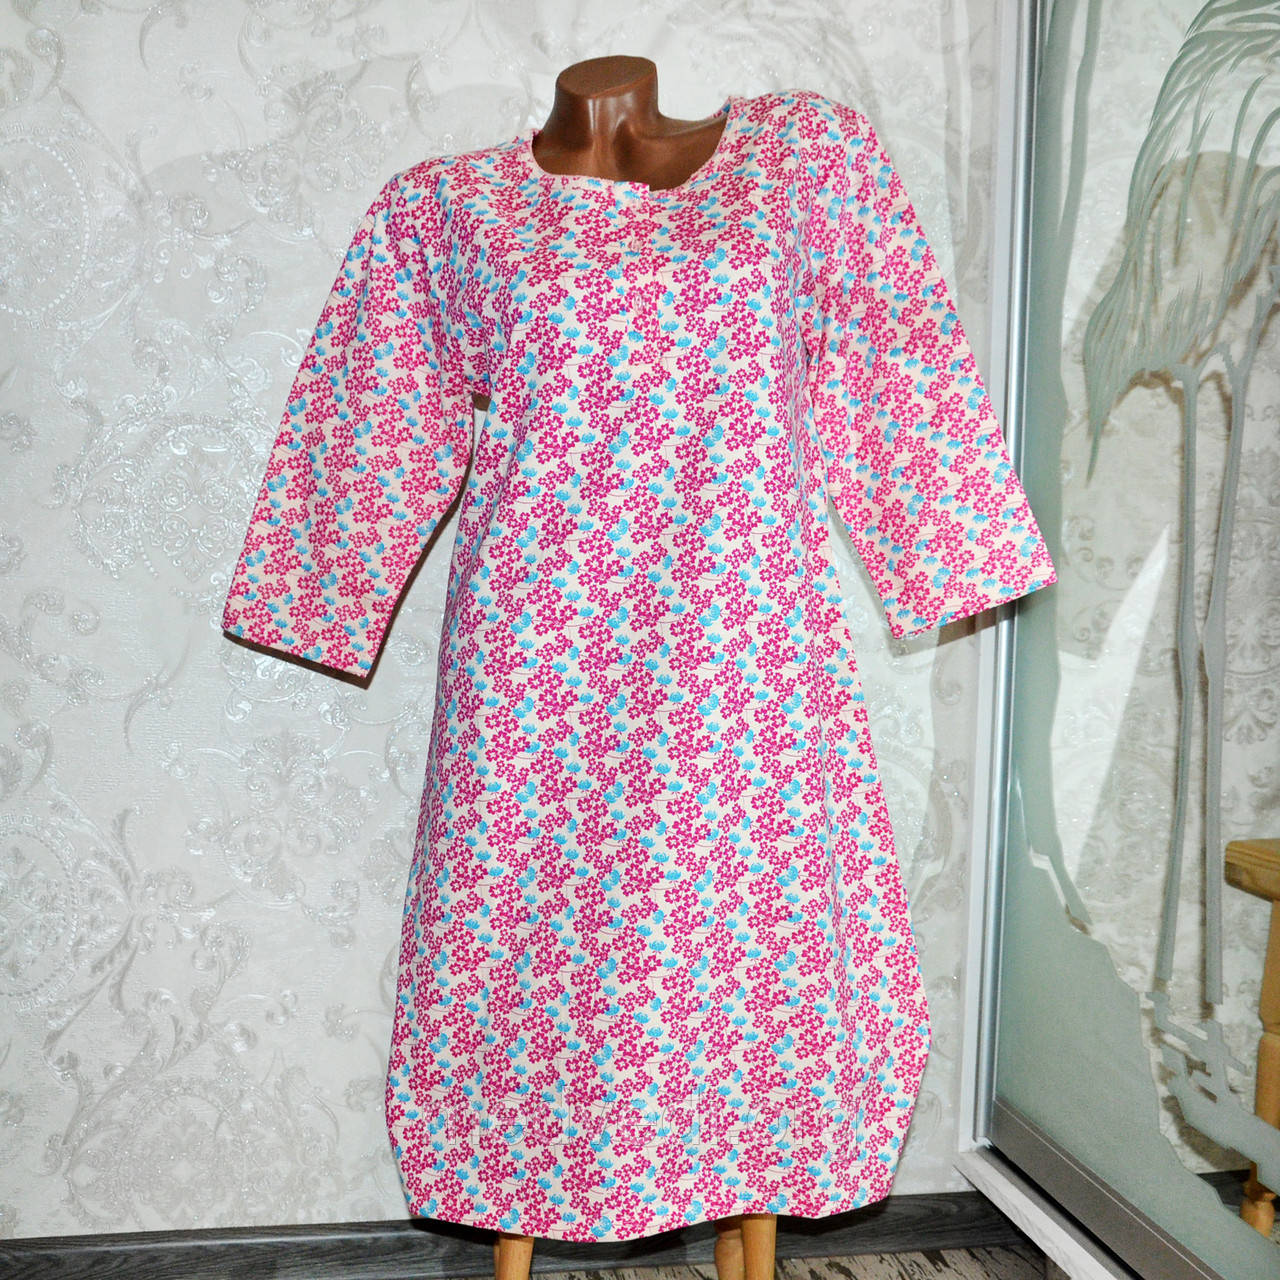 Великі розміри 48, 50, 52 Тепла жіноча нічна сорочка для сну, рожева ночнушка 100% бавовна, на байку